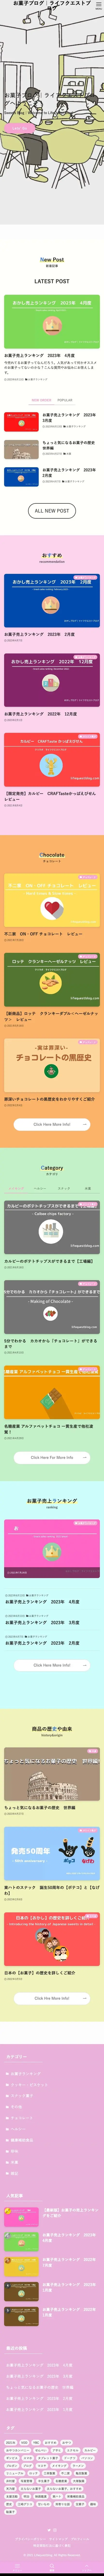 お菓子ブログ｜ライフクエストブログ | おすすめや新商品のお菓子ブログ